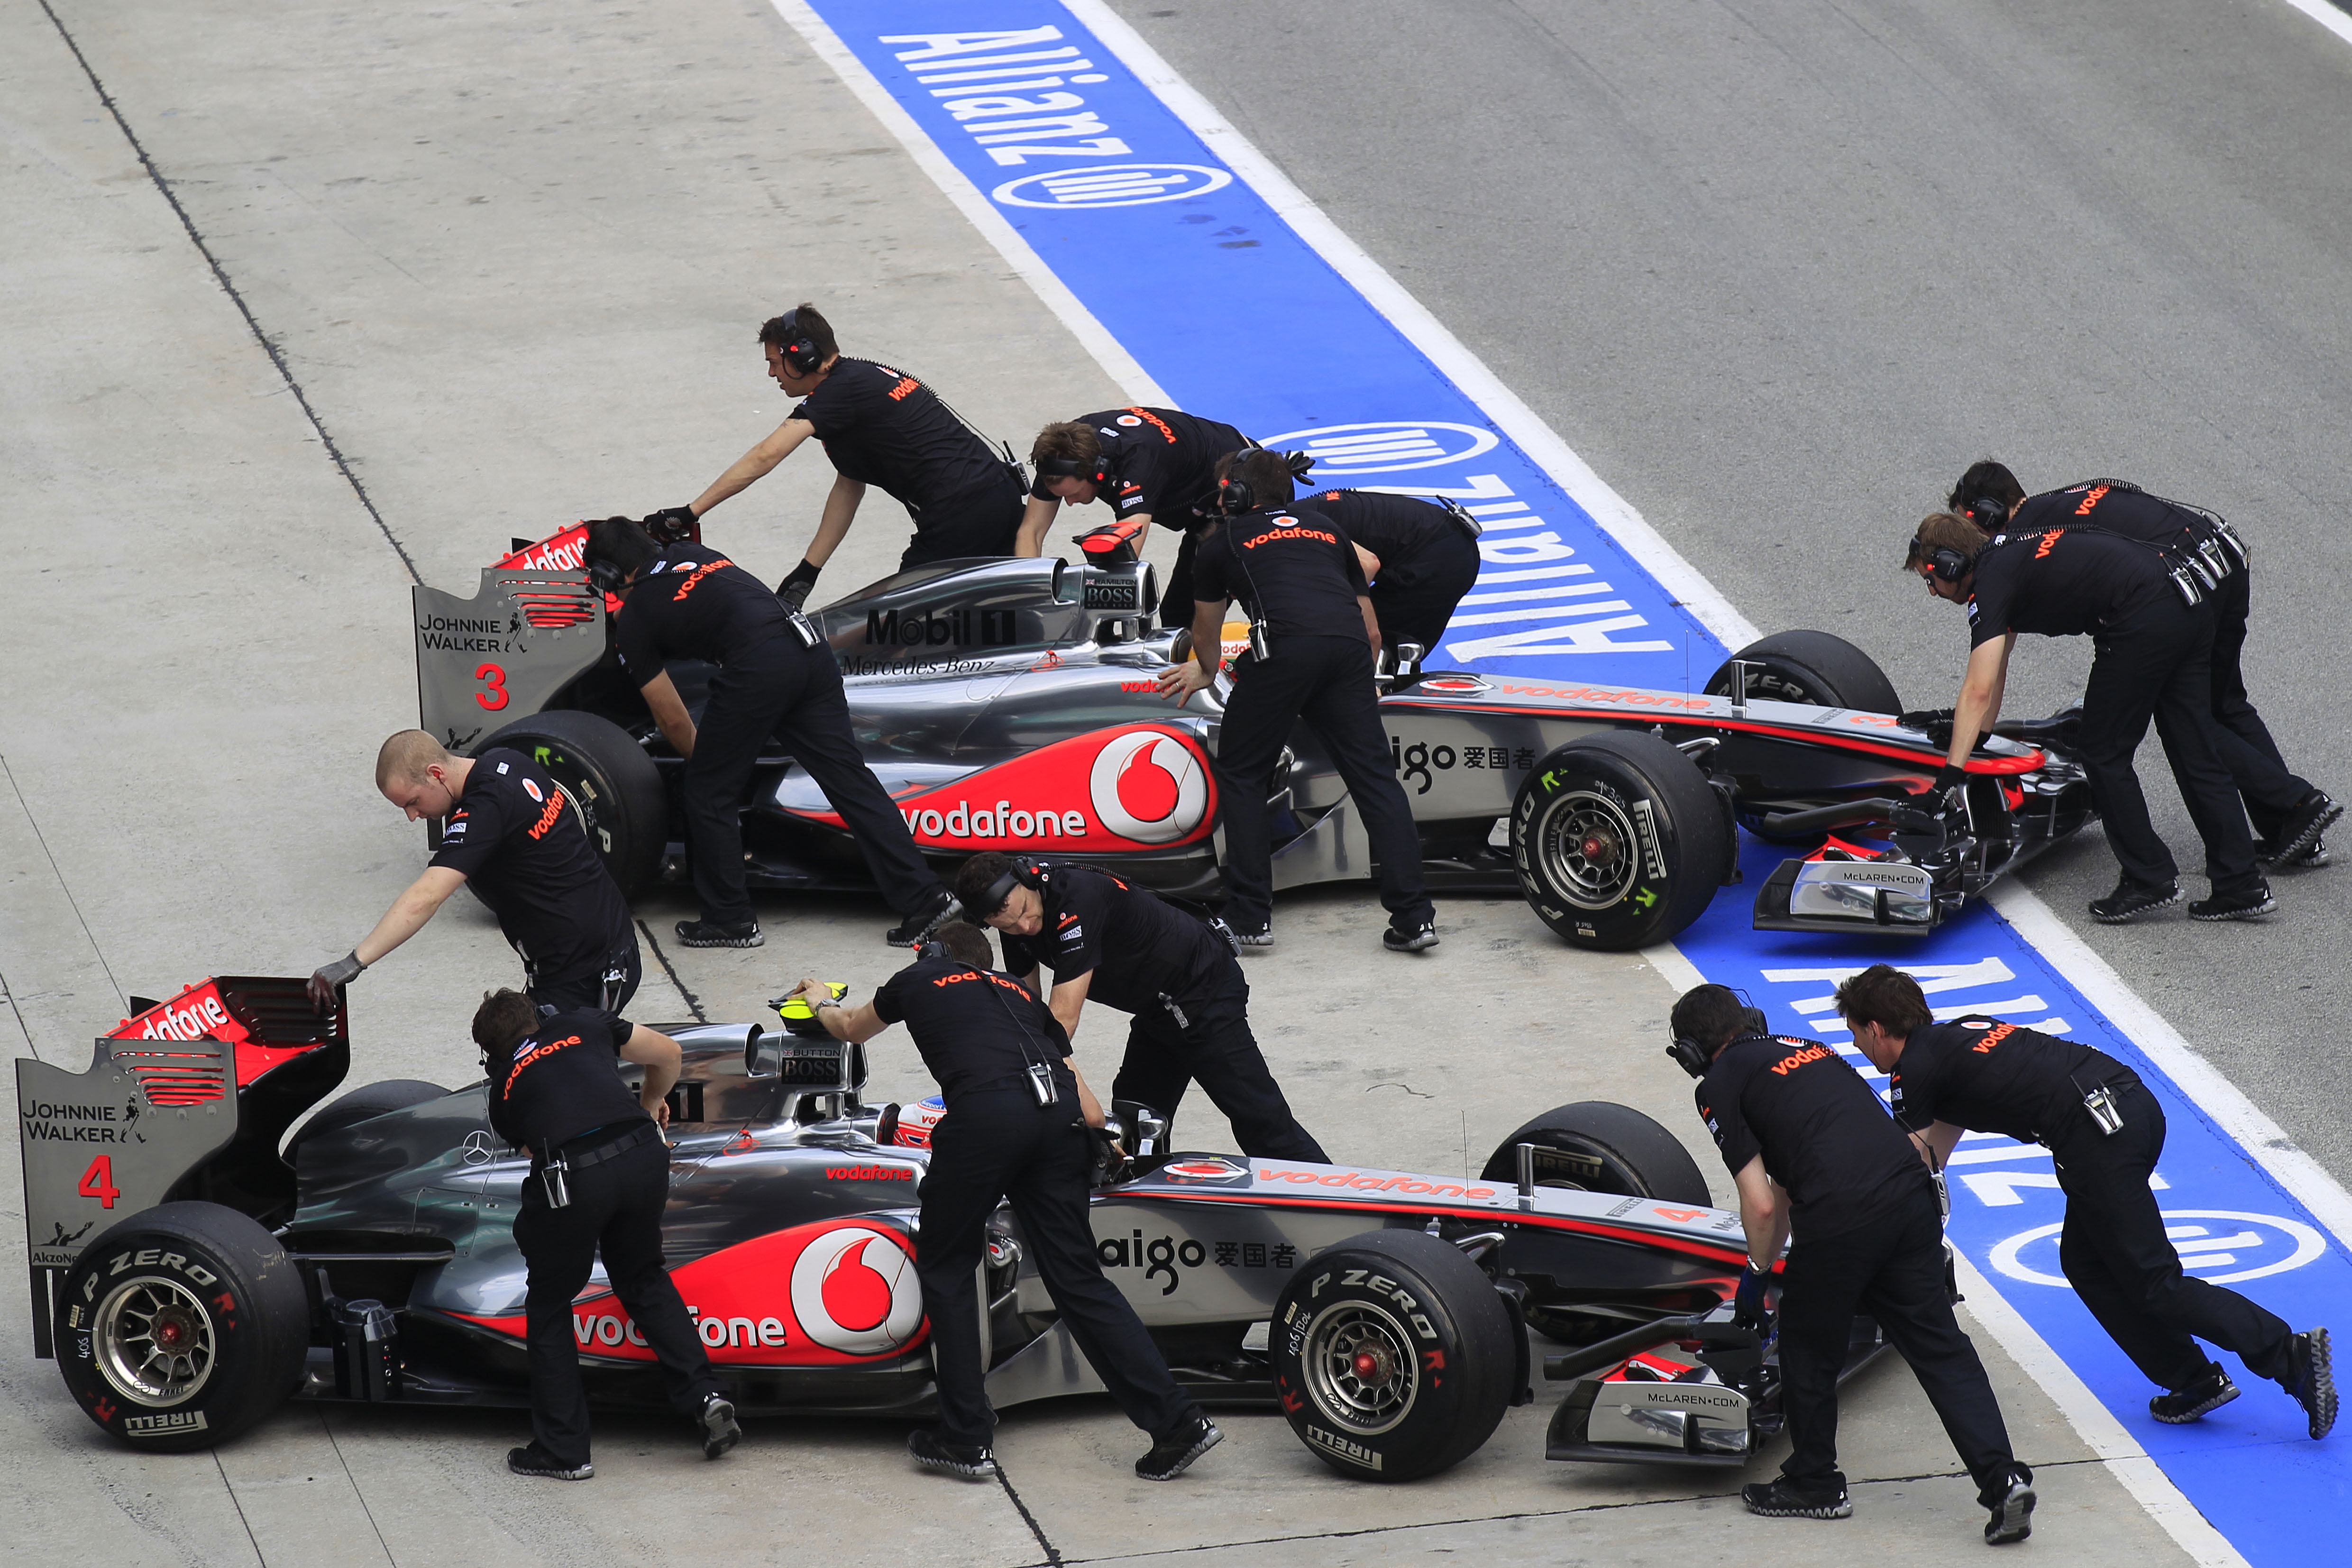 Формула 1, транспортные средства, McLaren F1 - обои на рабочий стол